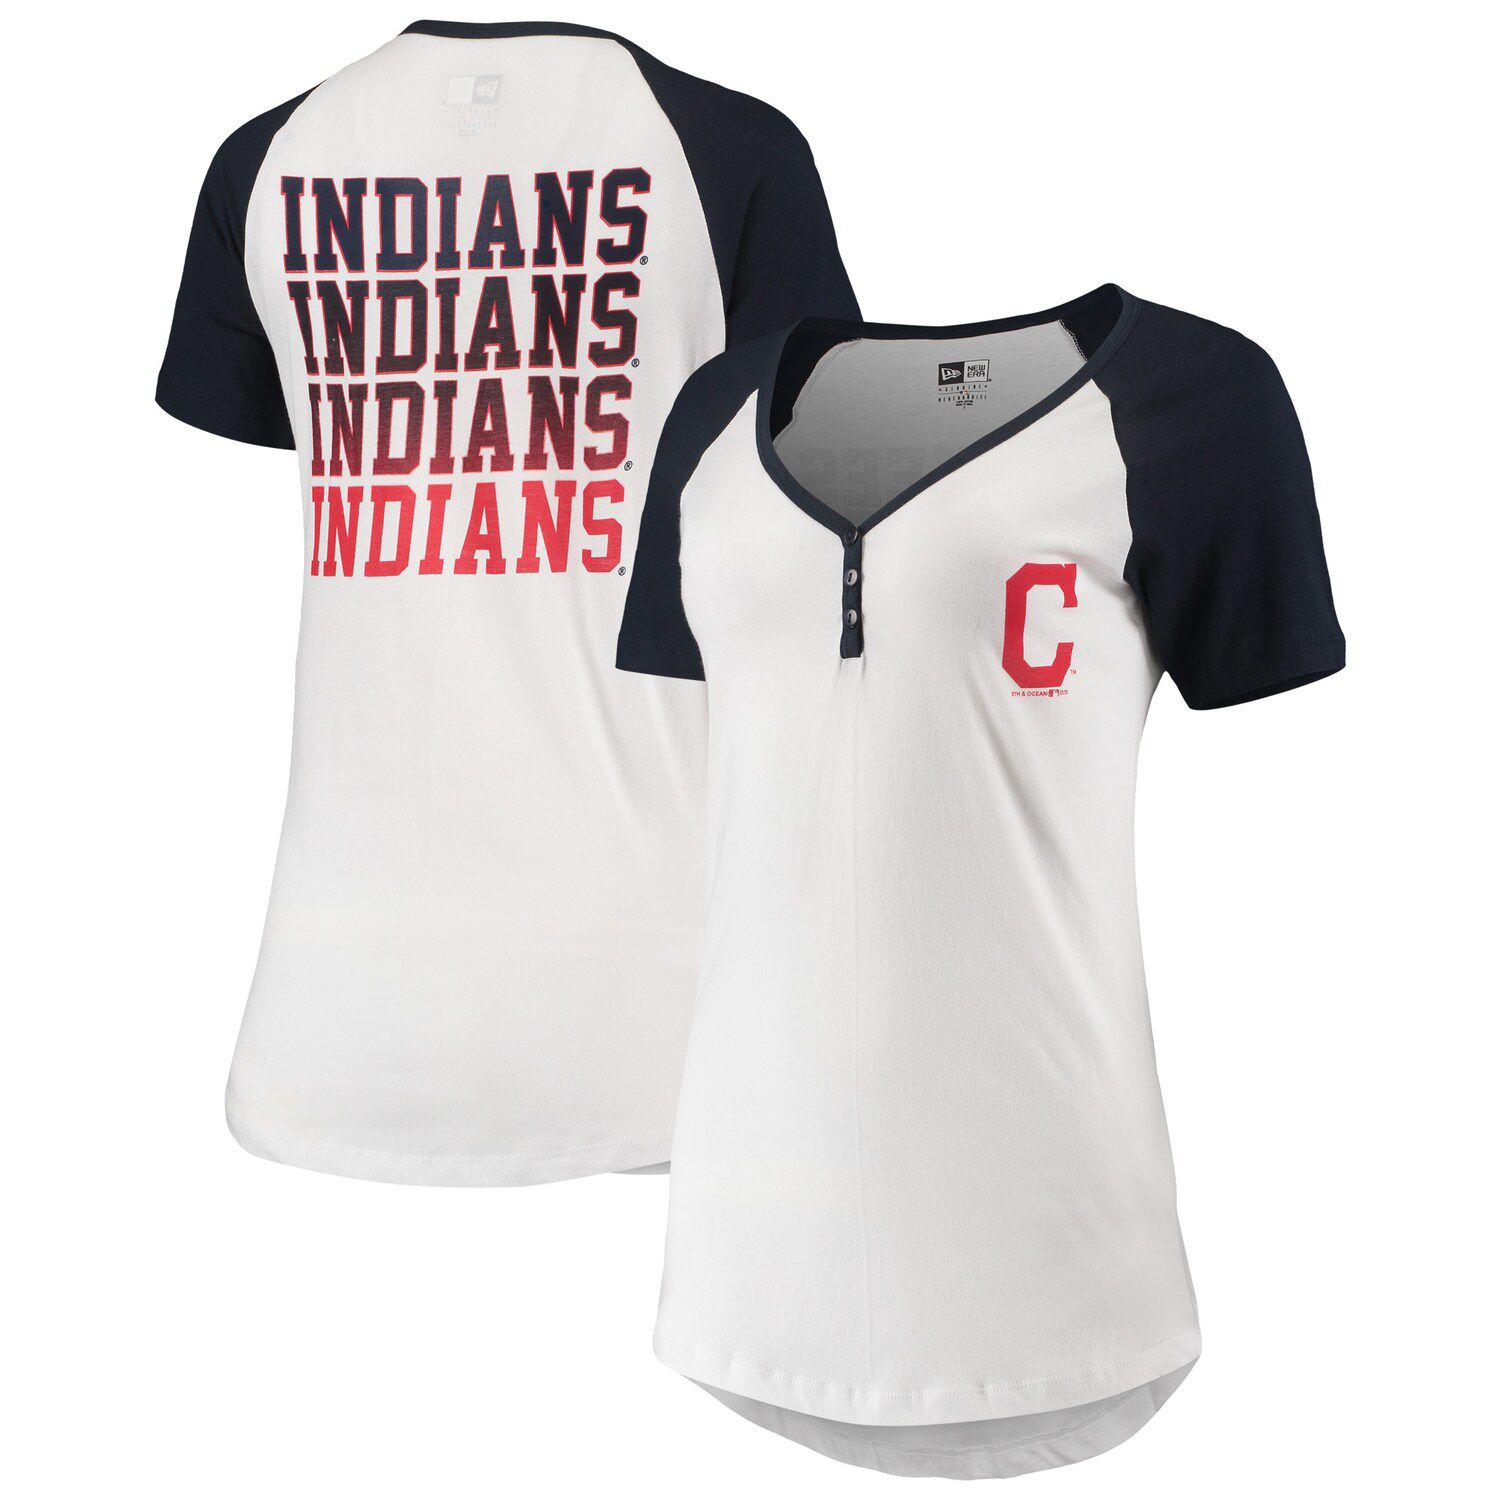 kohls cleveland indians shirts